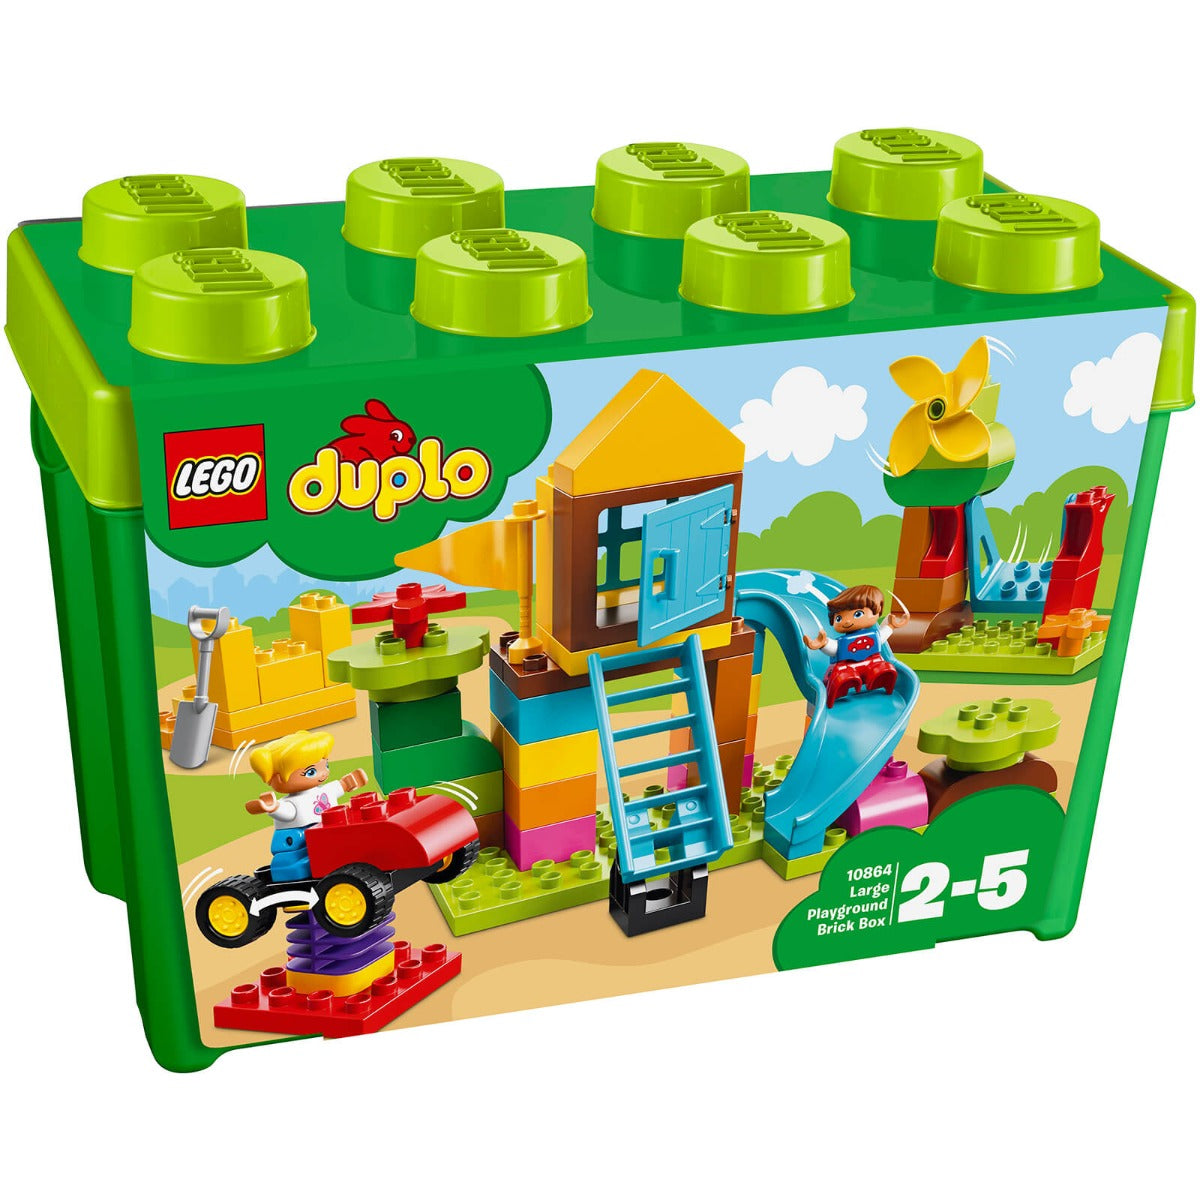 Lego Duplo Large Playground Brick Box 10864